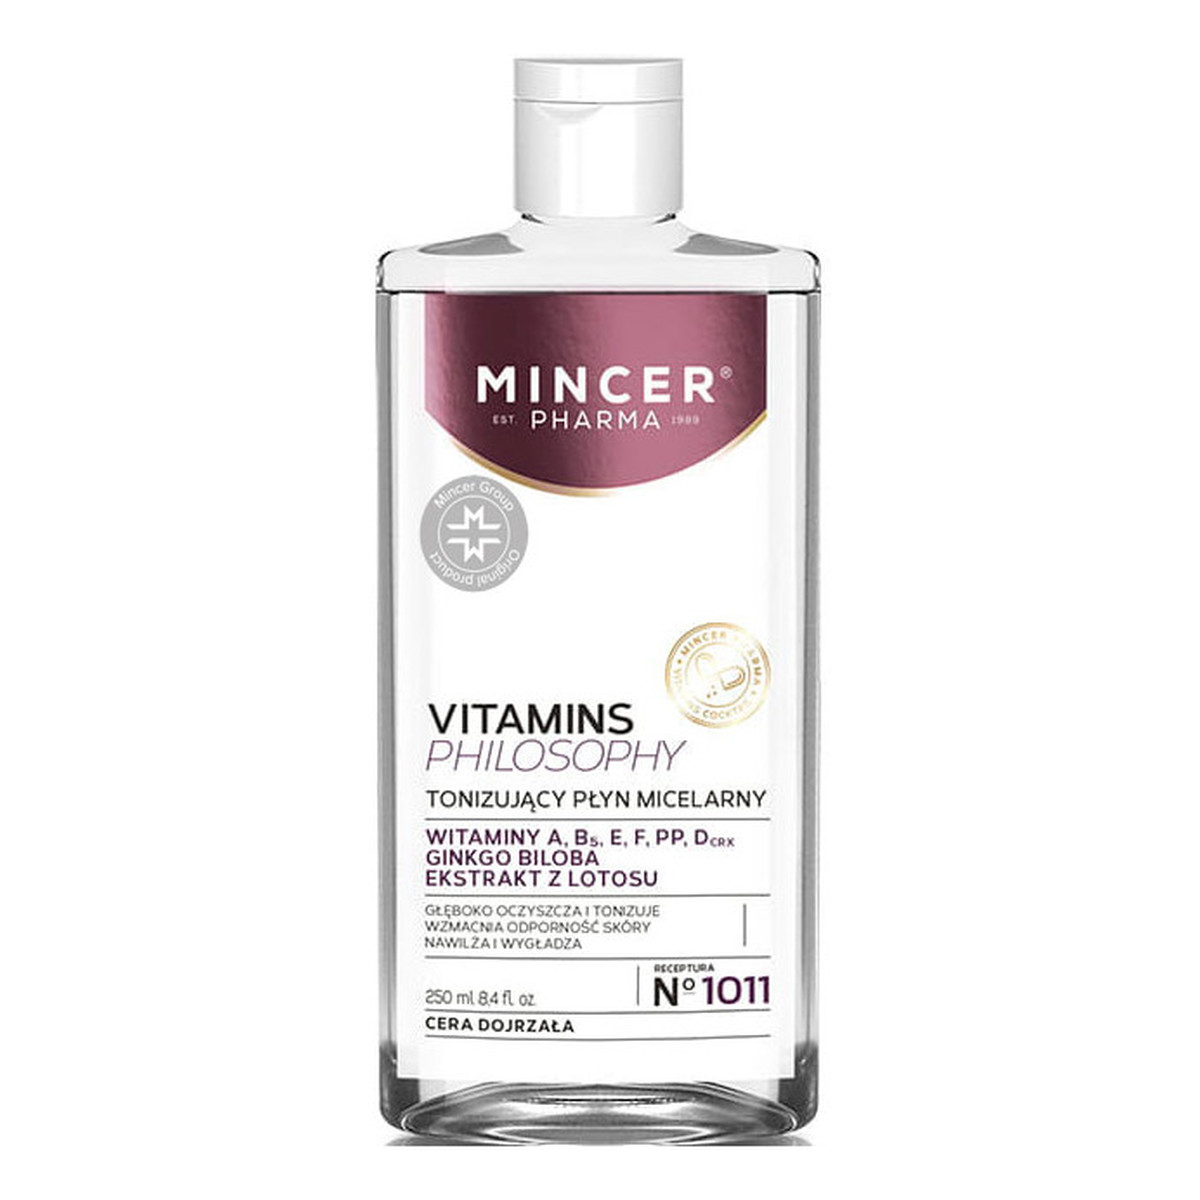 Mincer Pharma Vitamins Philosophy Płyn micelarny tonizujący No 1011 250ml